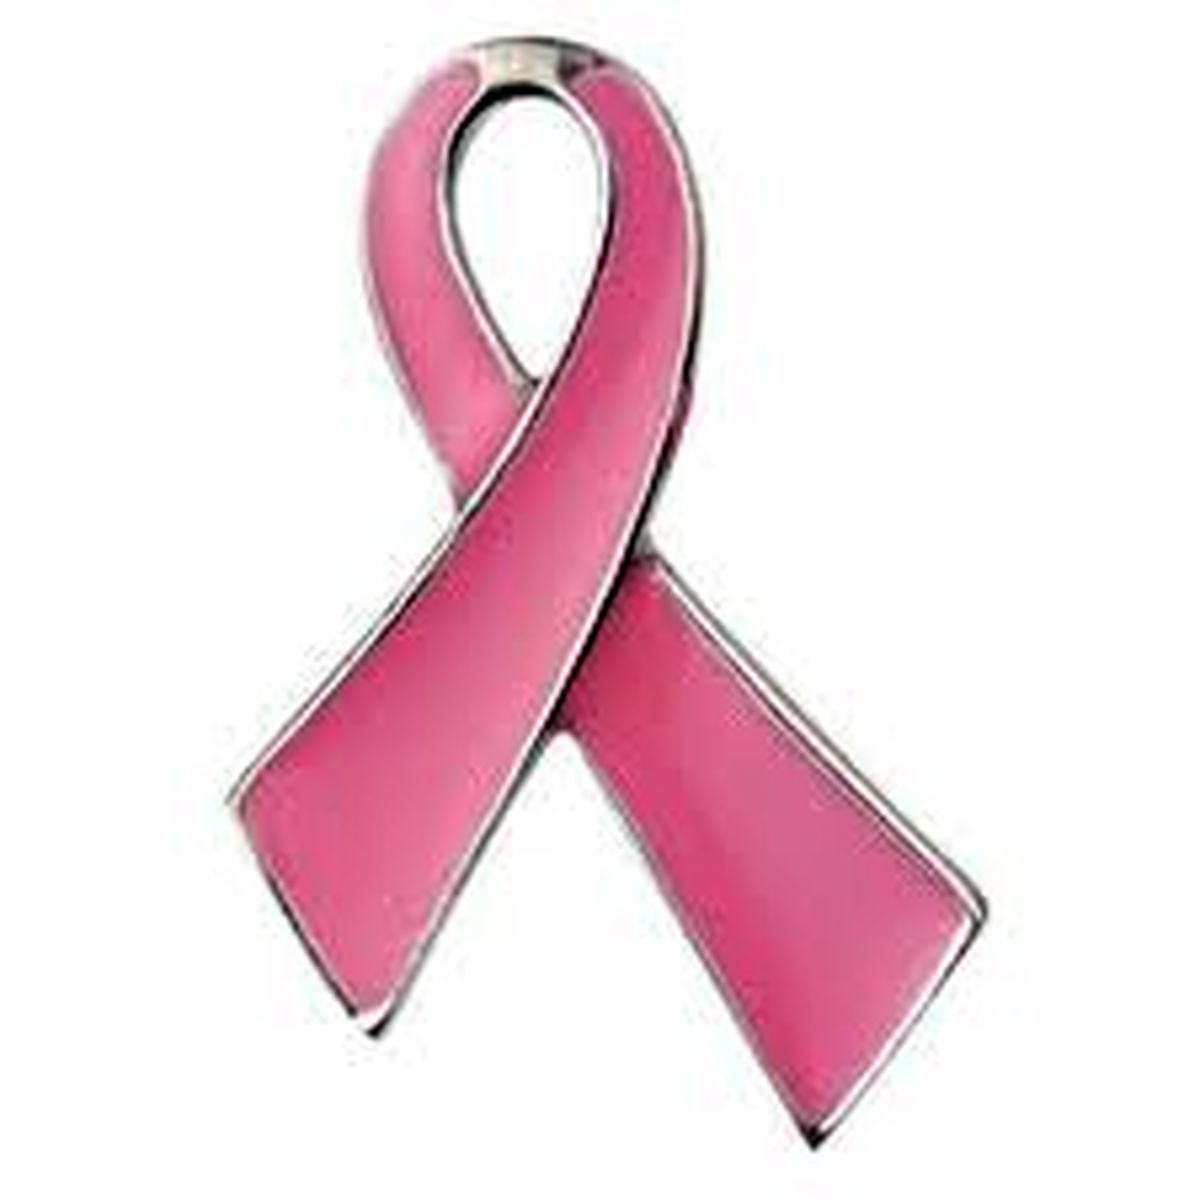 اقدامات حمایتی از بیماران سرطان پستان در کشور مغفول مانده است/سرطان پستان ترسناک نیست